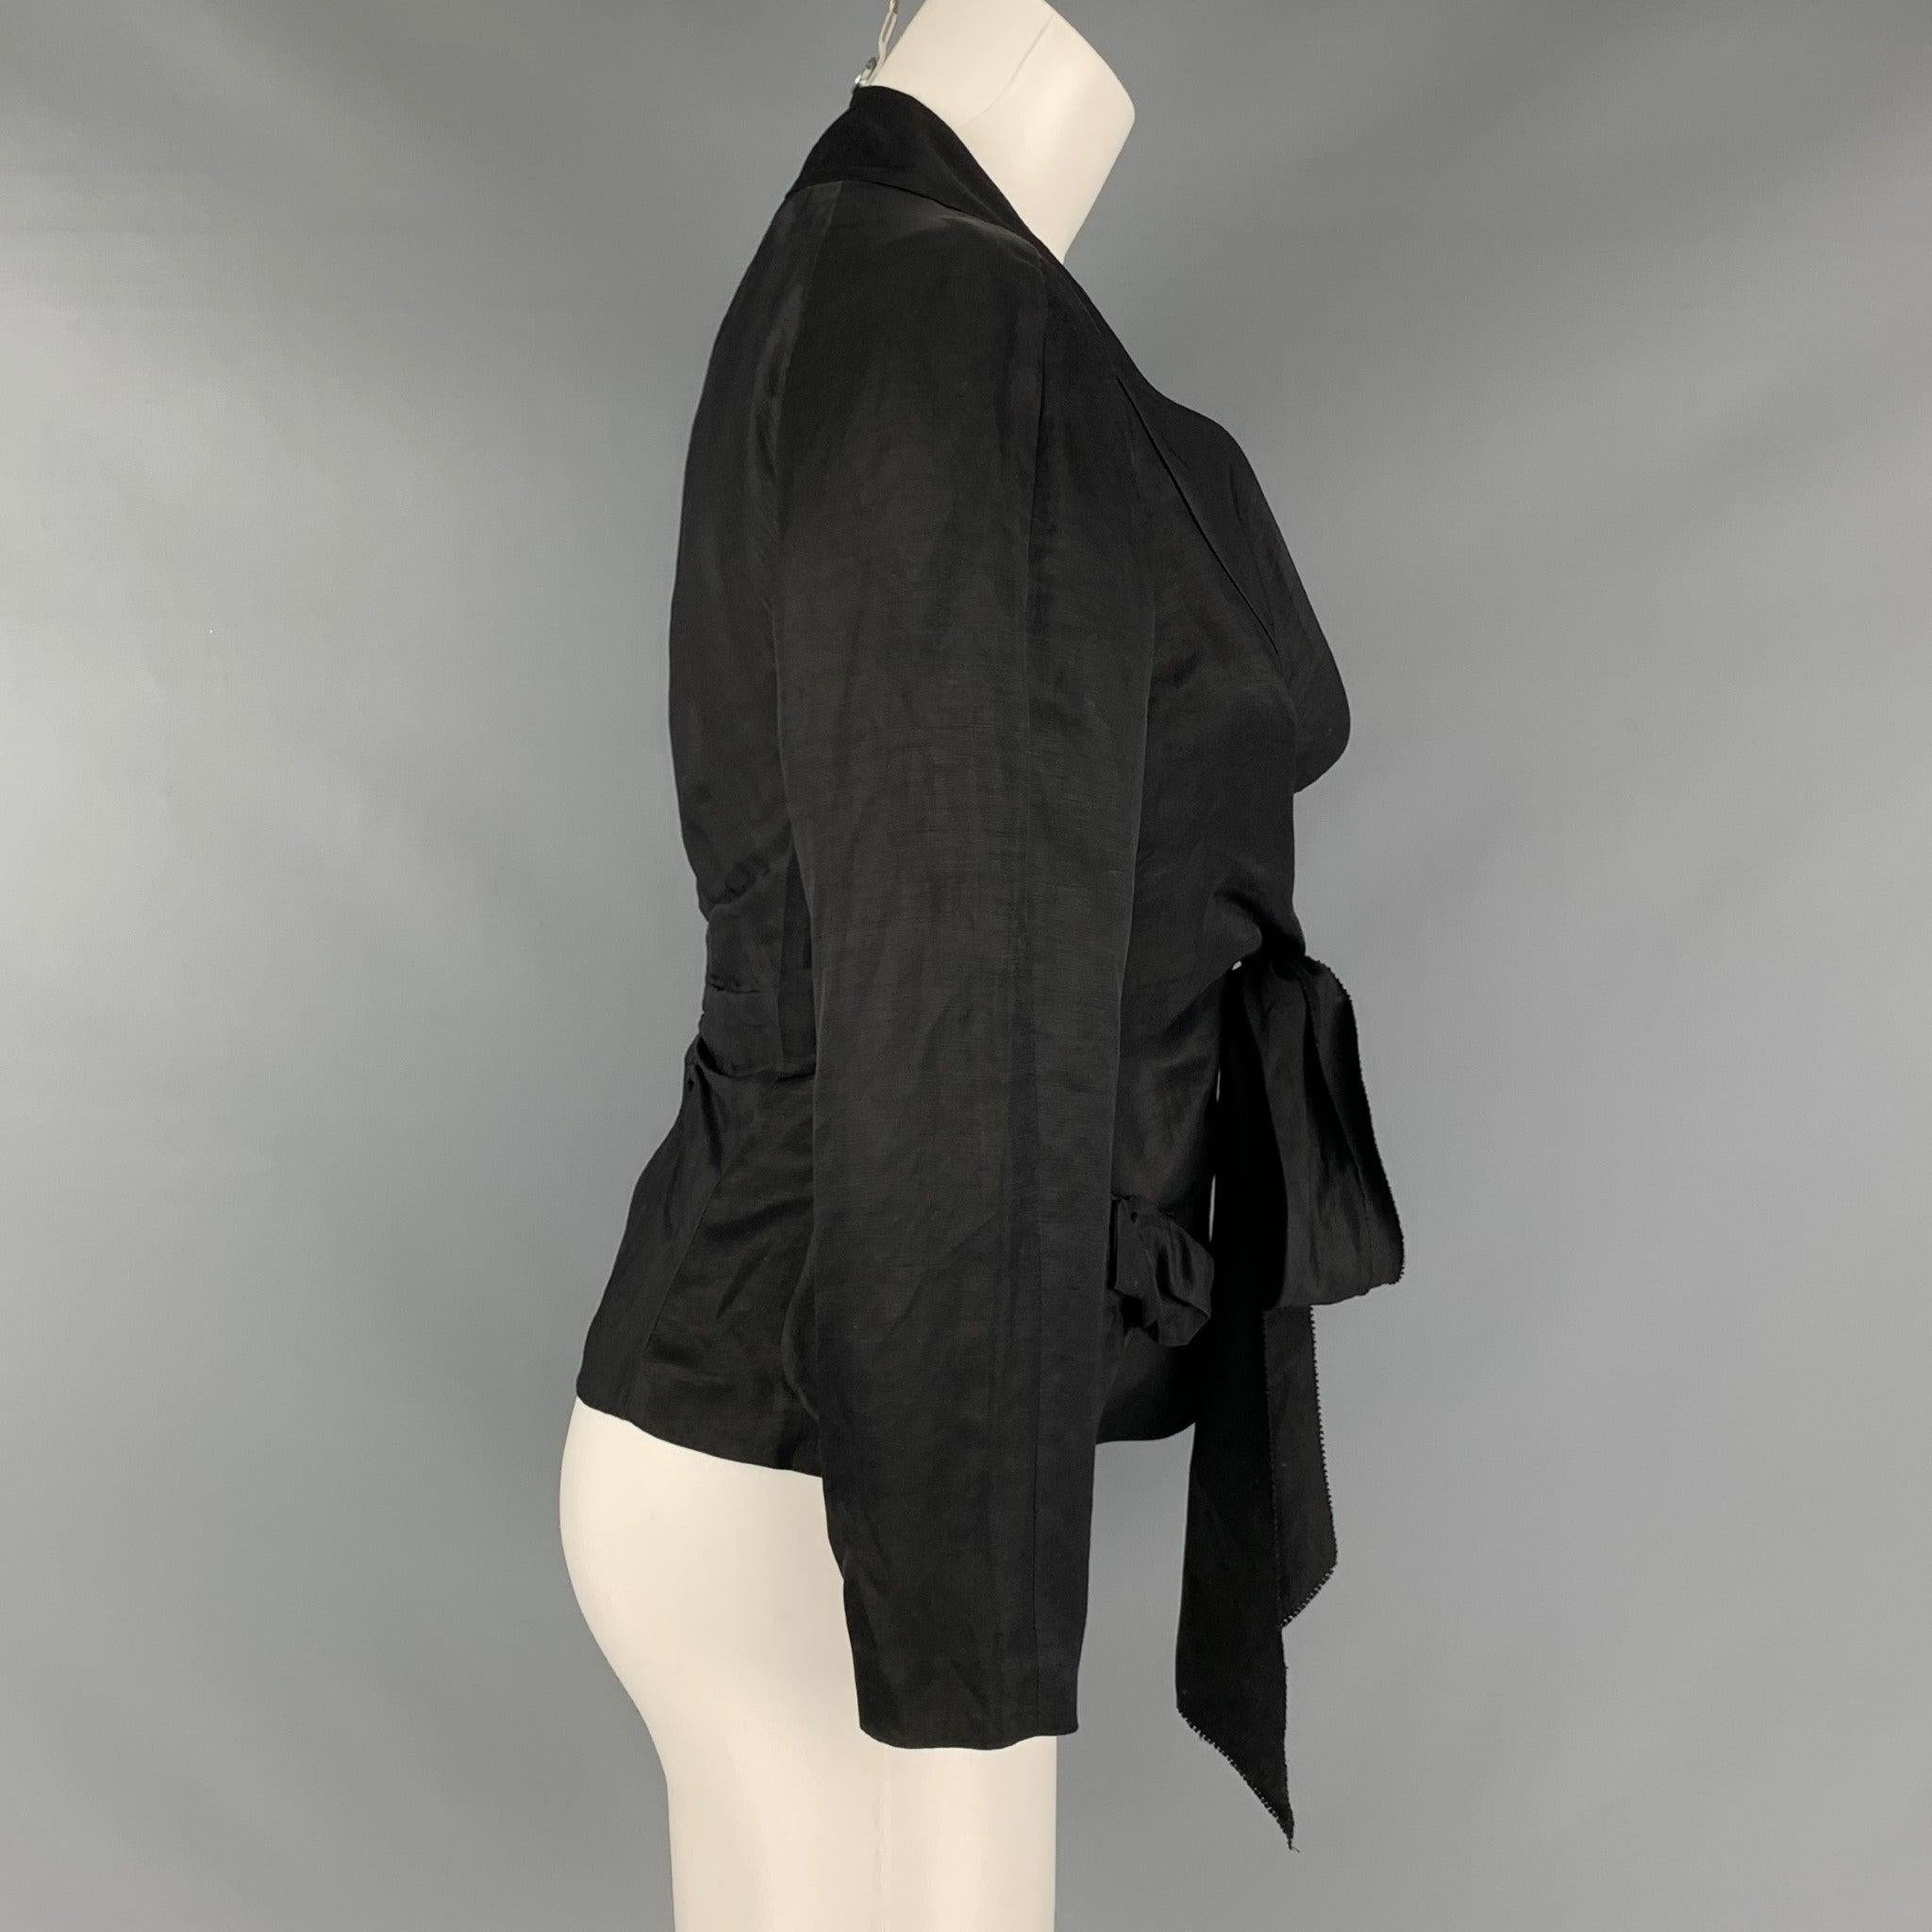 La veste DONNA KARAN est tissée en lin et viscose noirs et présente un col châle, des liens sur le devant et une fermeture à bouton unique. Fabriqué en Italie. Très bon état. 

Marqué :    

Mesures : 
 
Épaule : 12 pouces Poitrine : 35 pouces